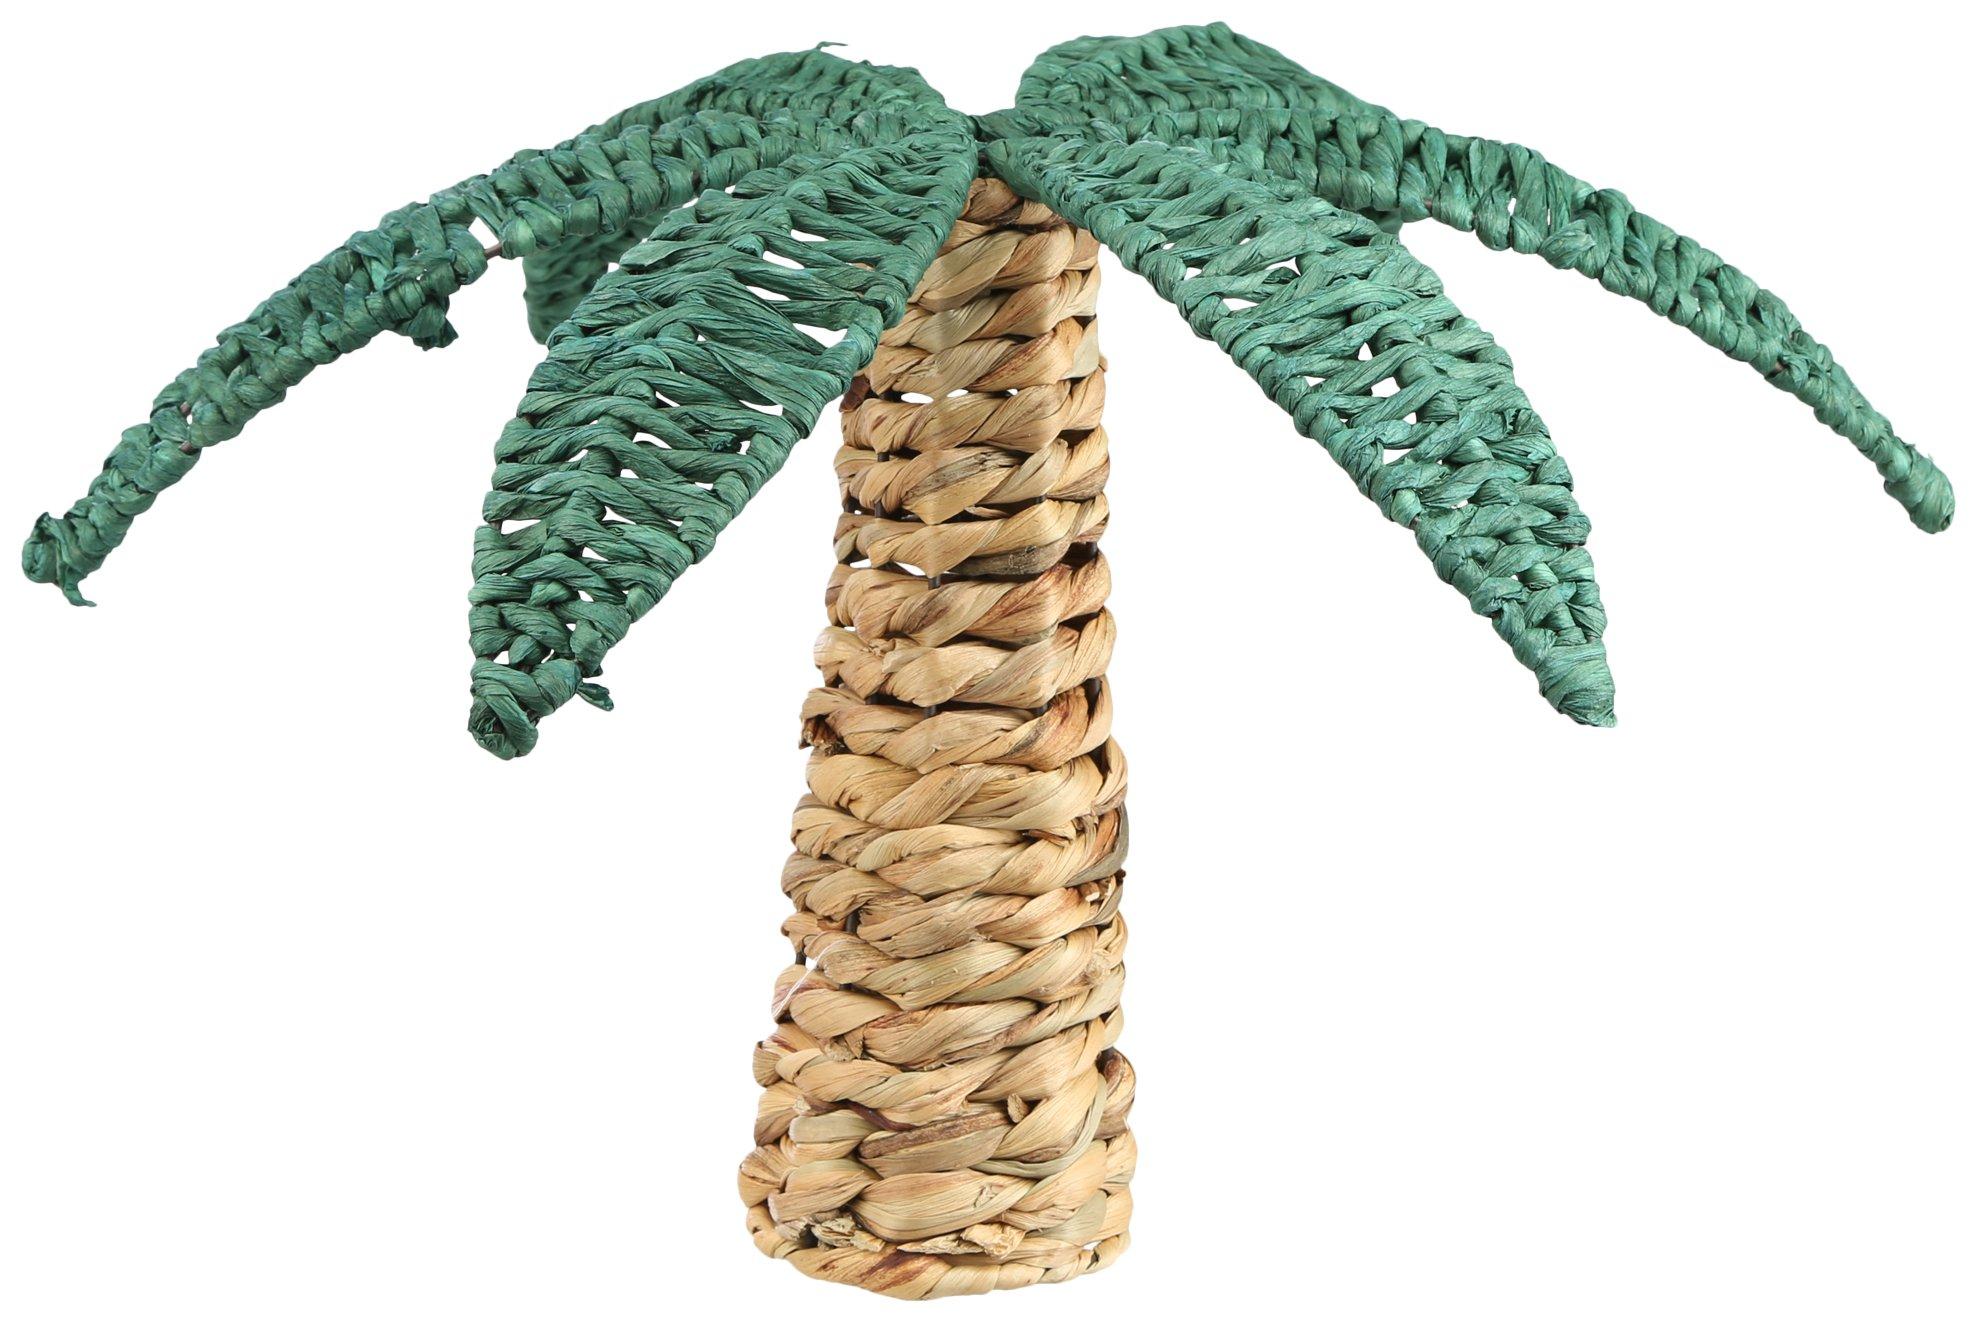 13in. Woven Wicker Palm Tree Decor